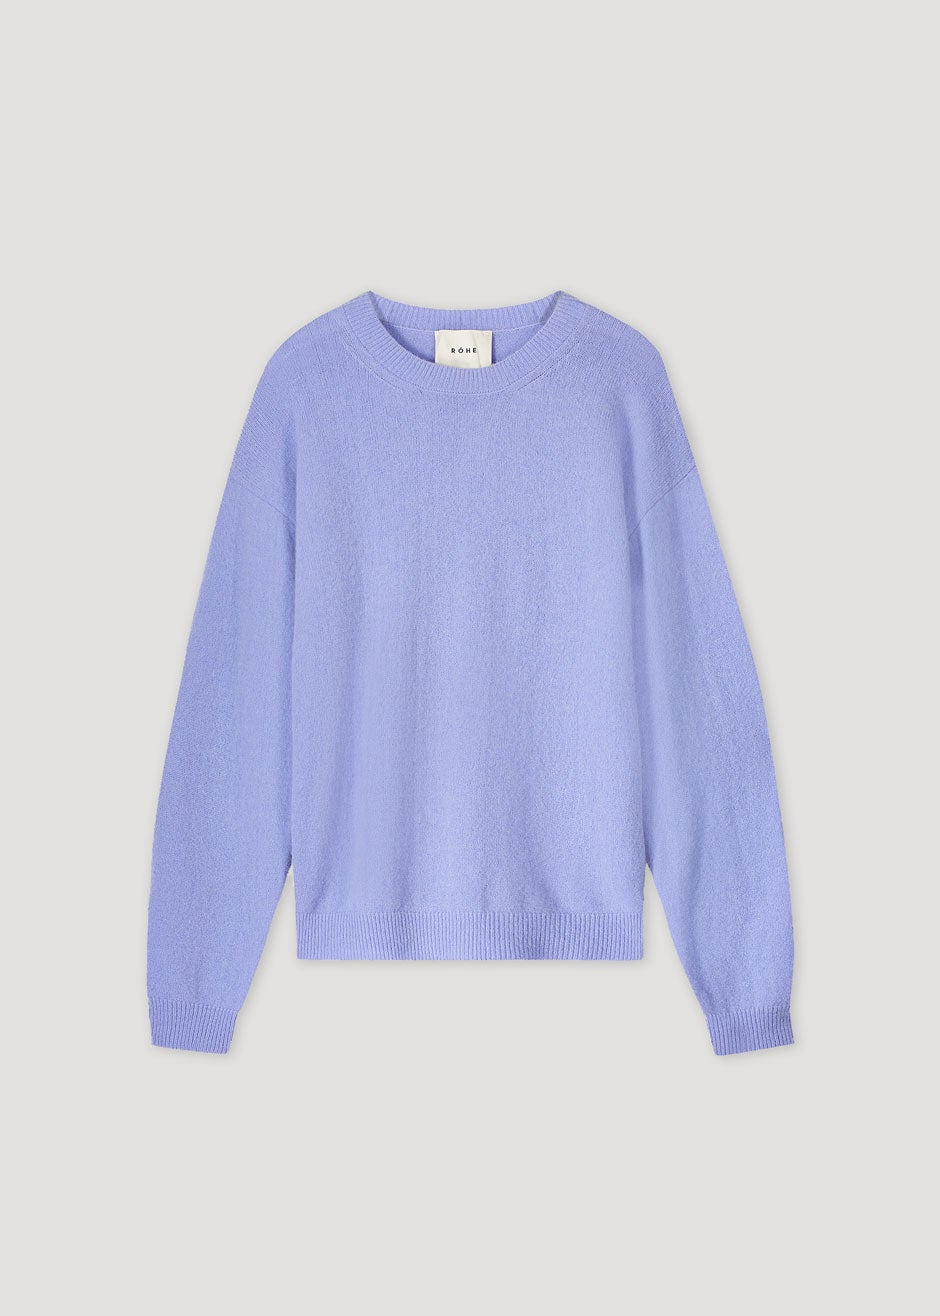 Róhe Allen Sweater - Lavender - 7